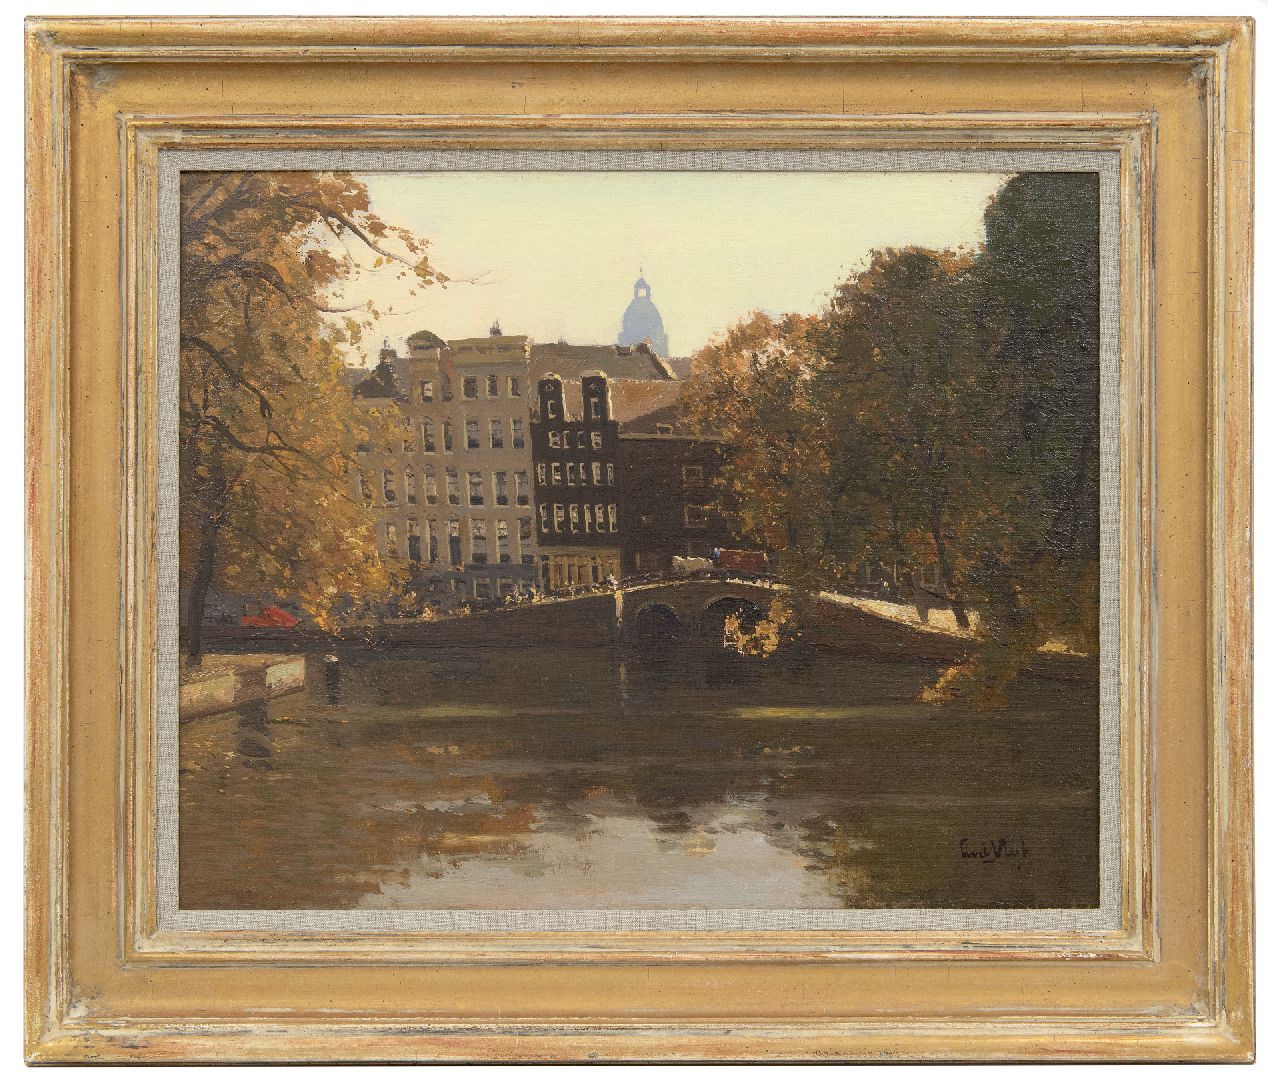 Vlist L. van der | Leendert van der Vlist | Schilderijen te koop aangeboden | Gezicht op de Herengracht in Amsterdam met de koepel van Metz & Co, olieverf op doek 40,4 x 50,5 cm, gesigneerd rechtsonder